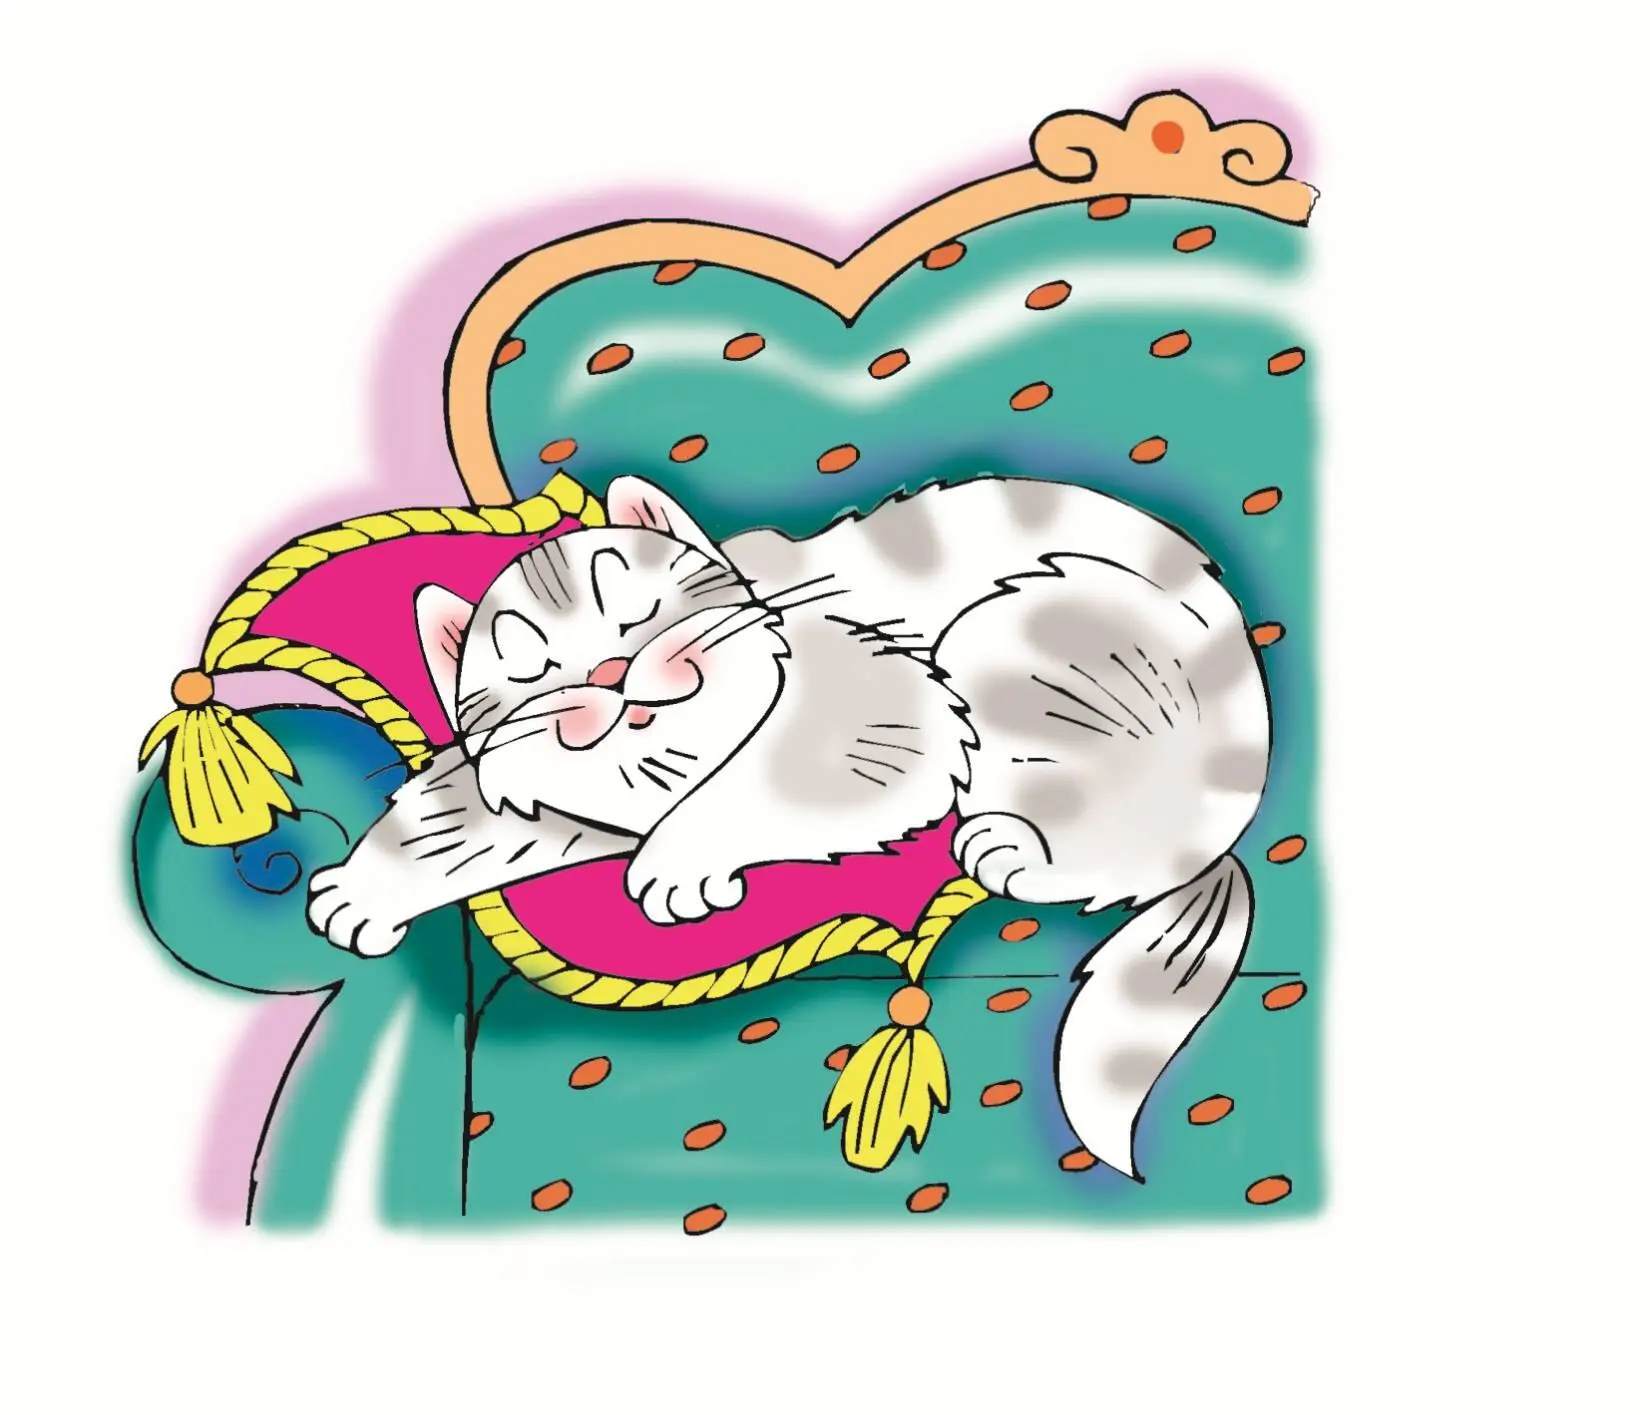 Кошка Распластавшись у окошка На диване дремлет кошка Ей с утра до вечера В - фото 5